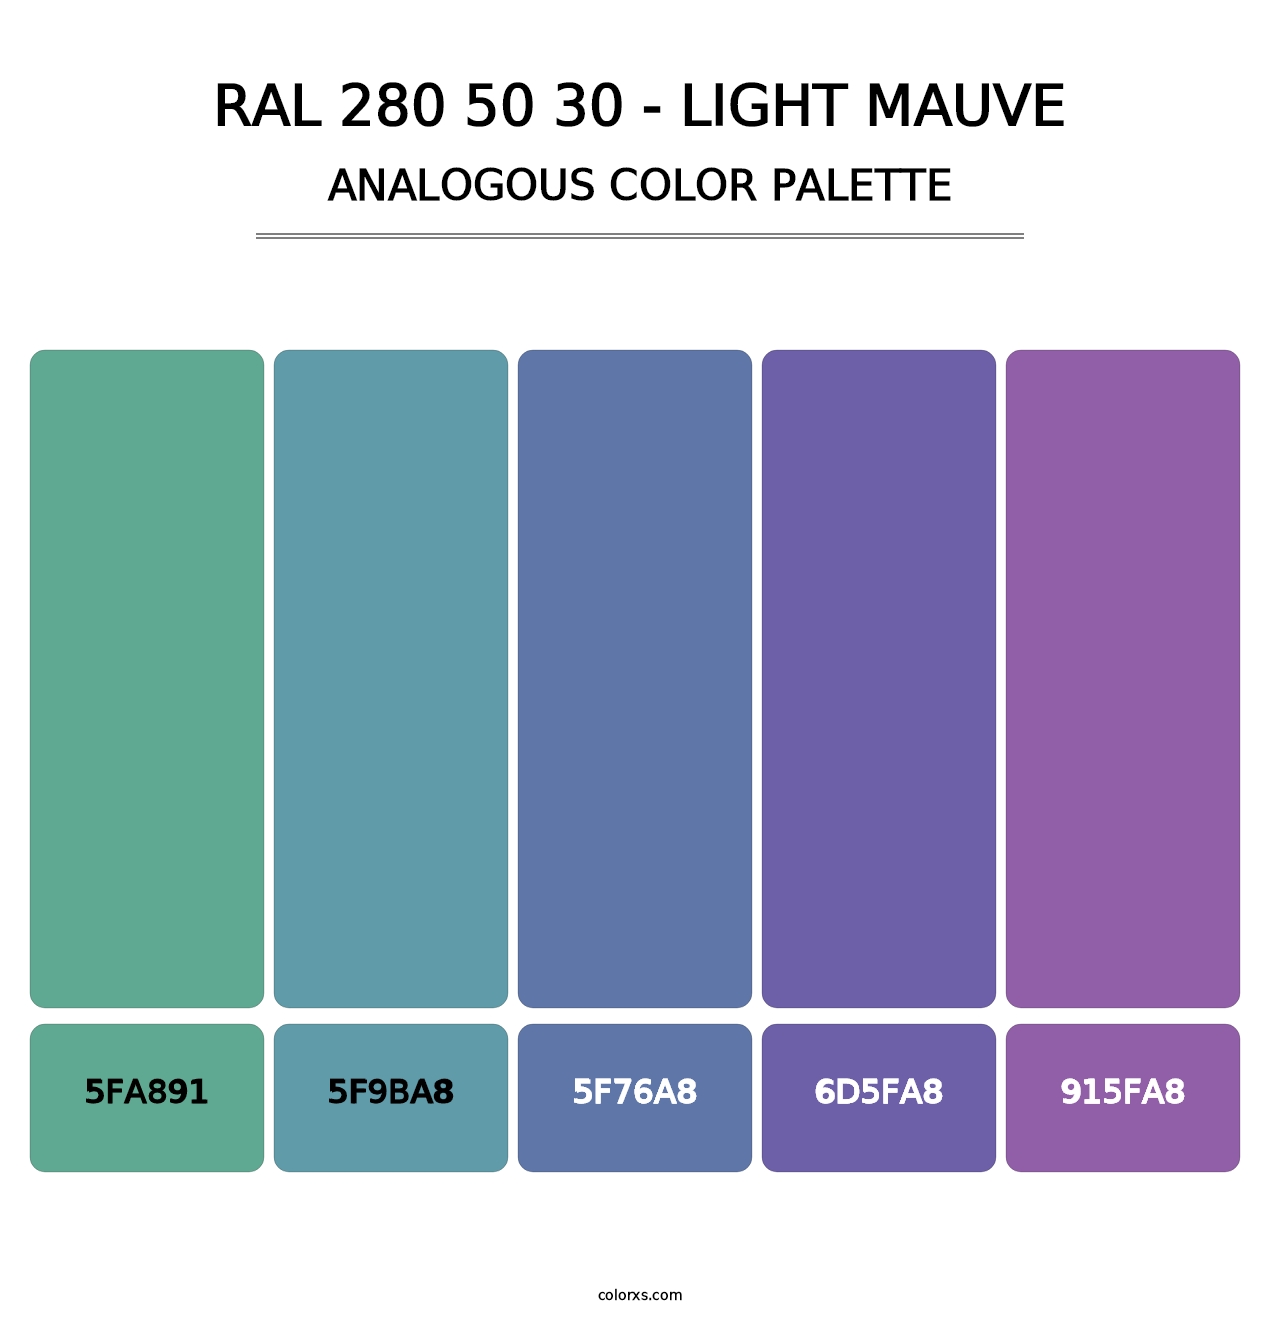 RAL 280 50 30 - Light Mauve - Analogous Color Palette